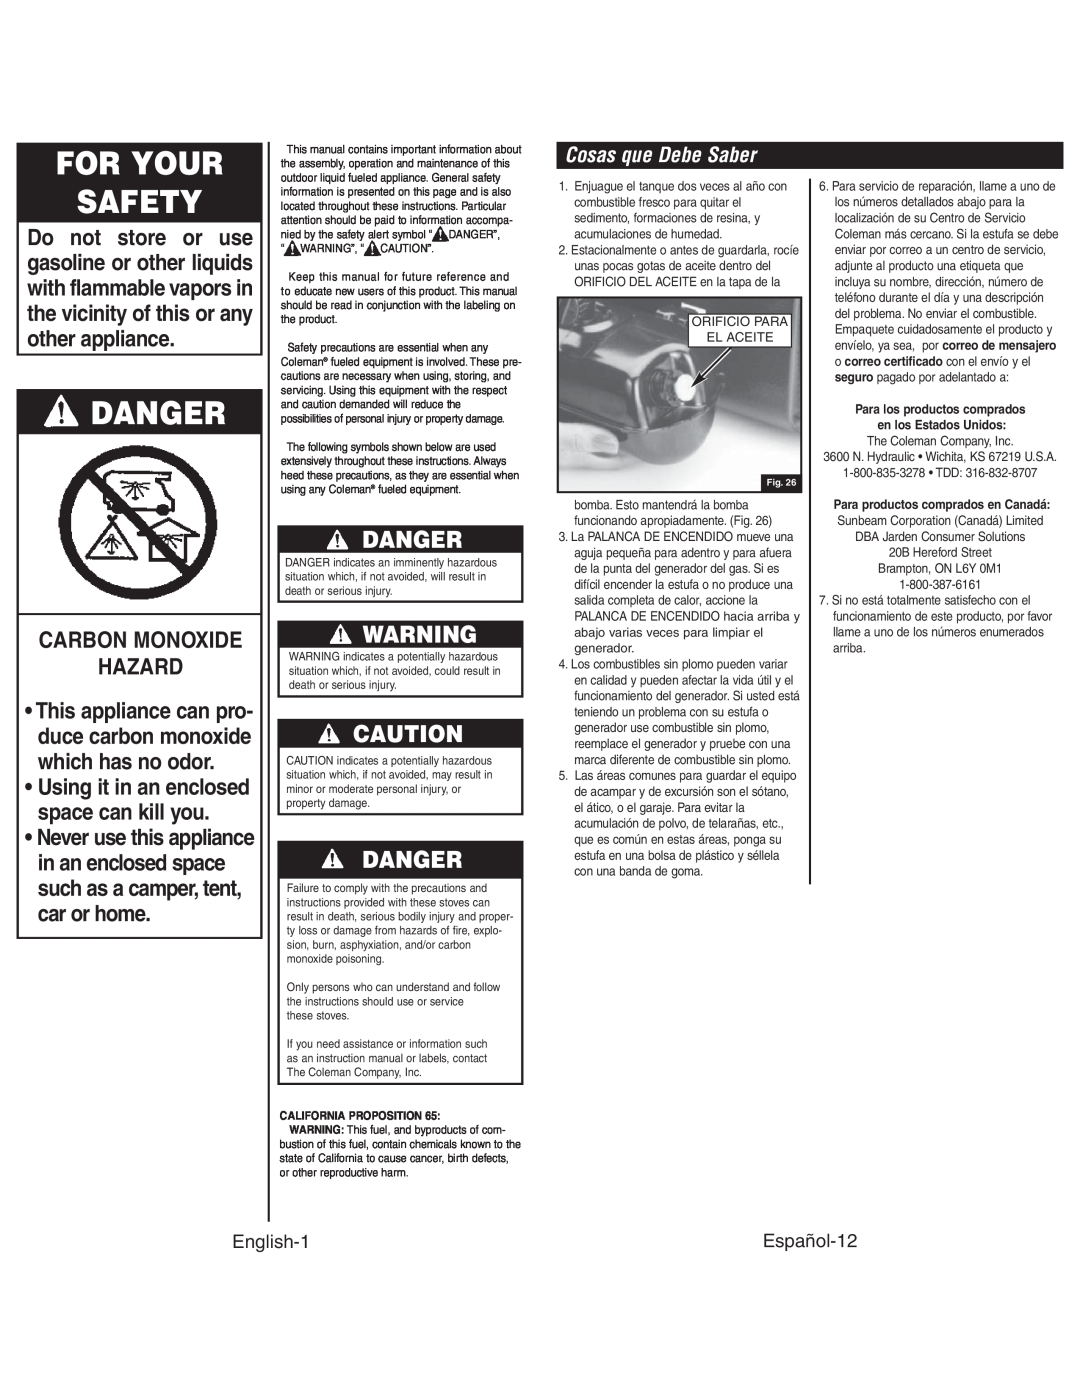 Coleman 4010003804 For Your Safety, Danger, Carbon Monoxide Hazard, Cosas que Debe Saber, English-1, Español-12 